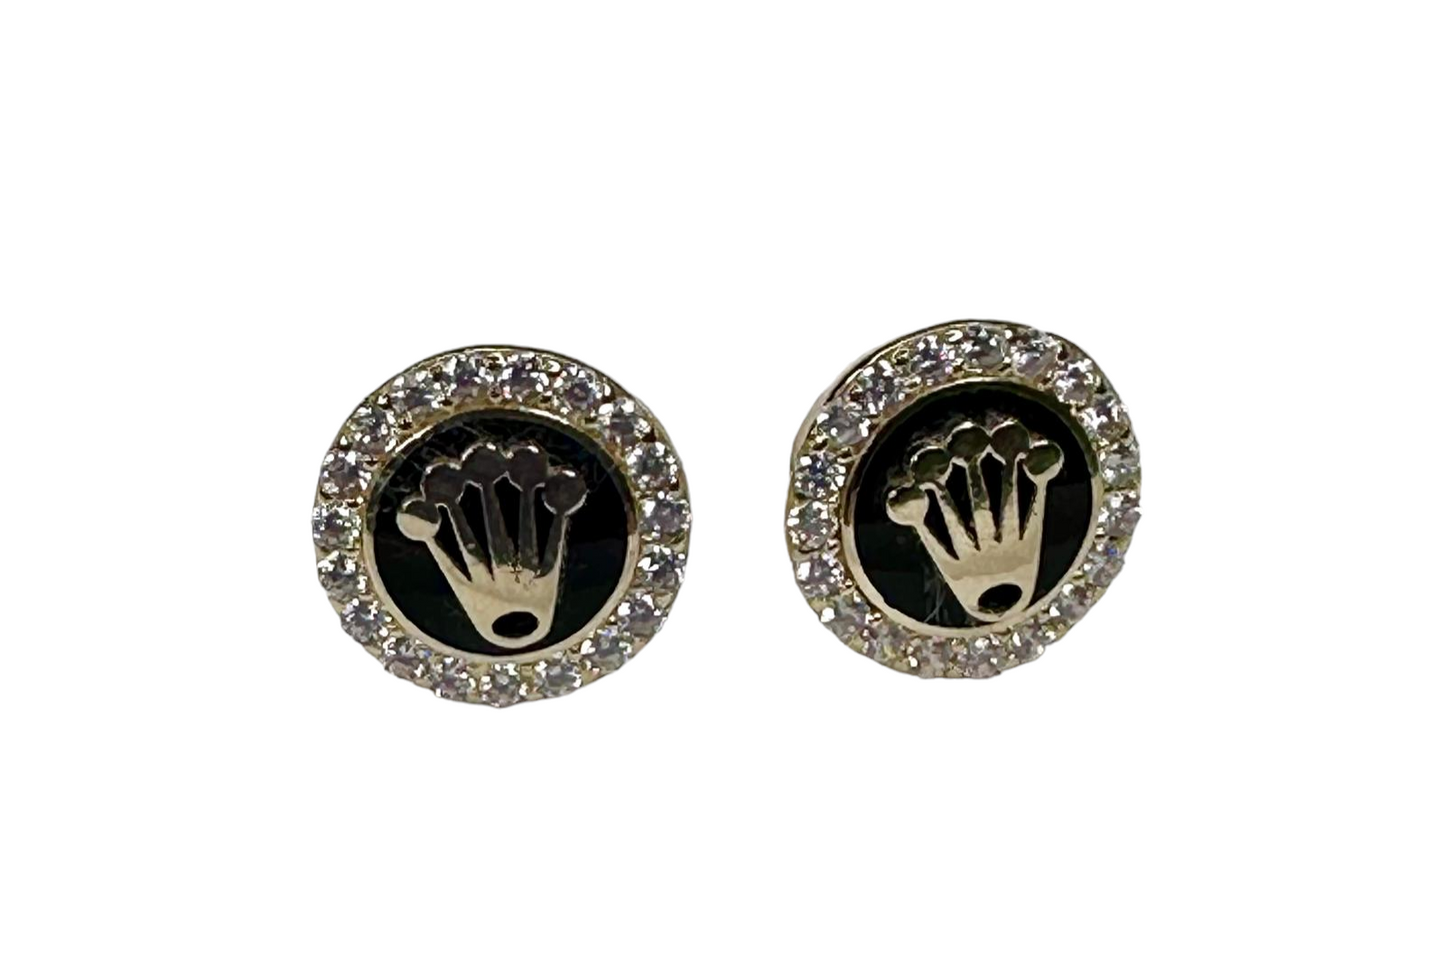 Style Rolex earrings